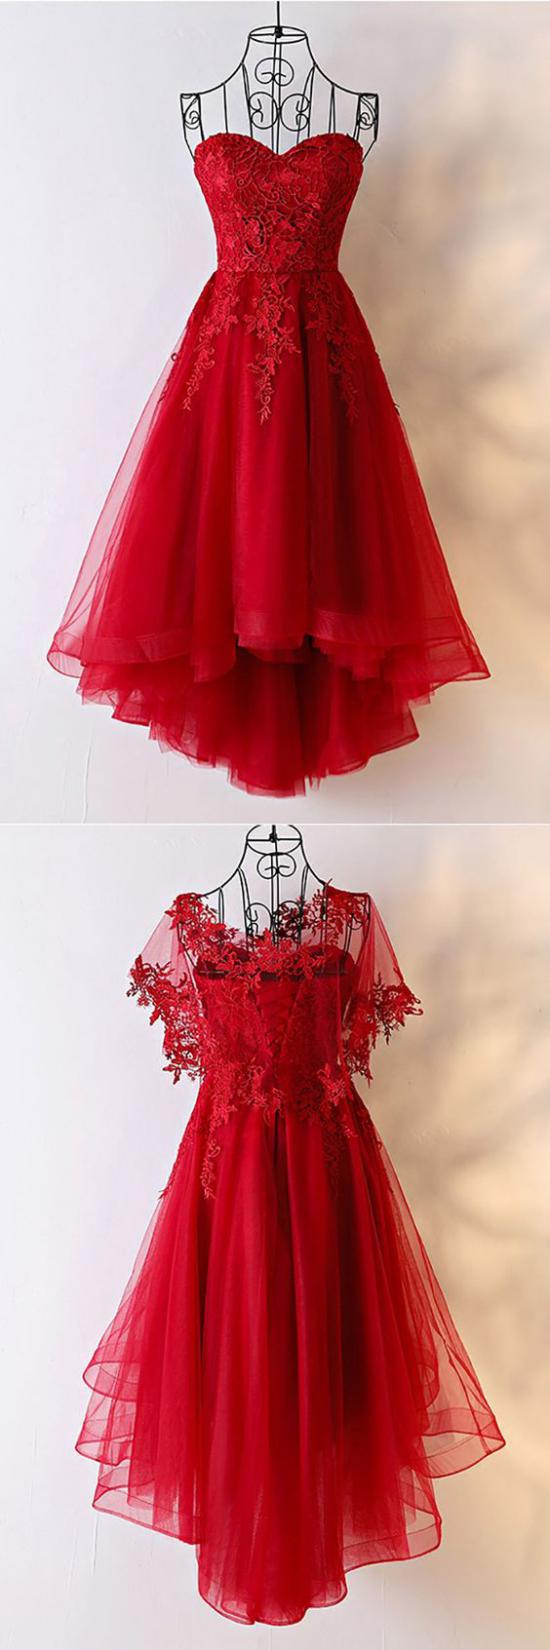 لباس شب قرمز جدید,مدل لباس شب قرمز 2019,مدل لباس شب قرمز 2018